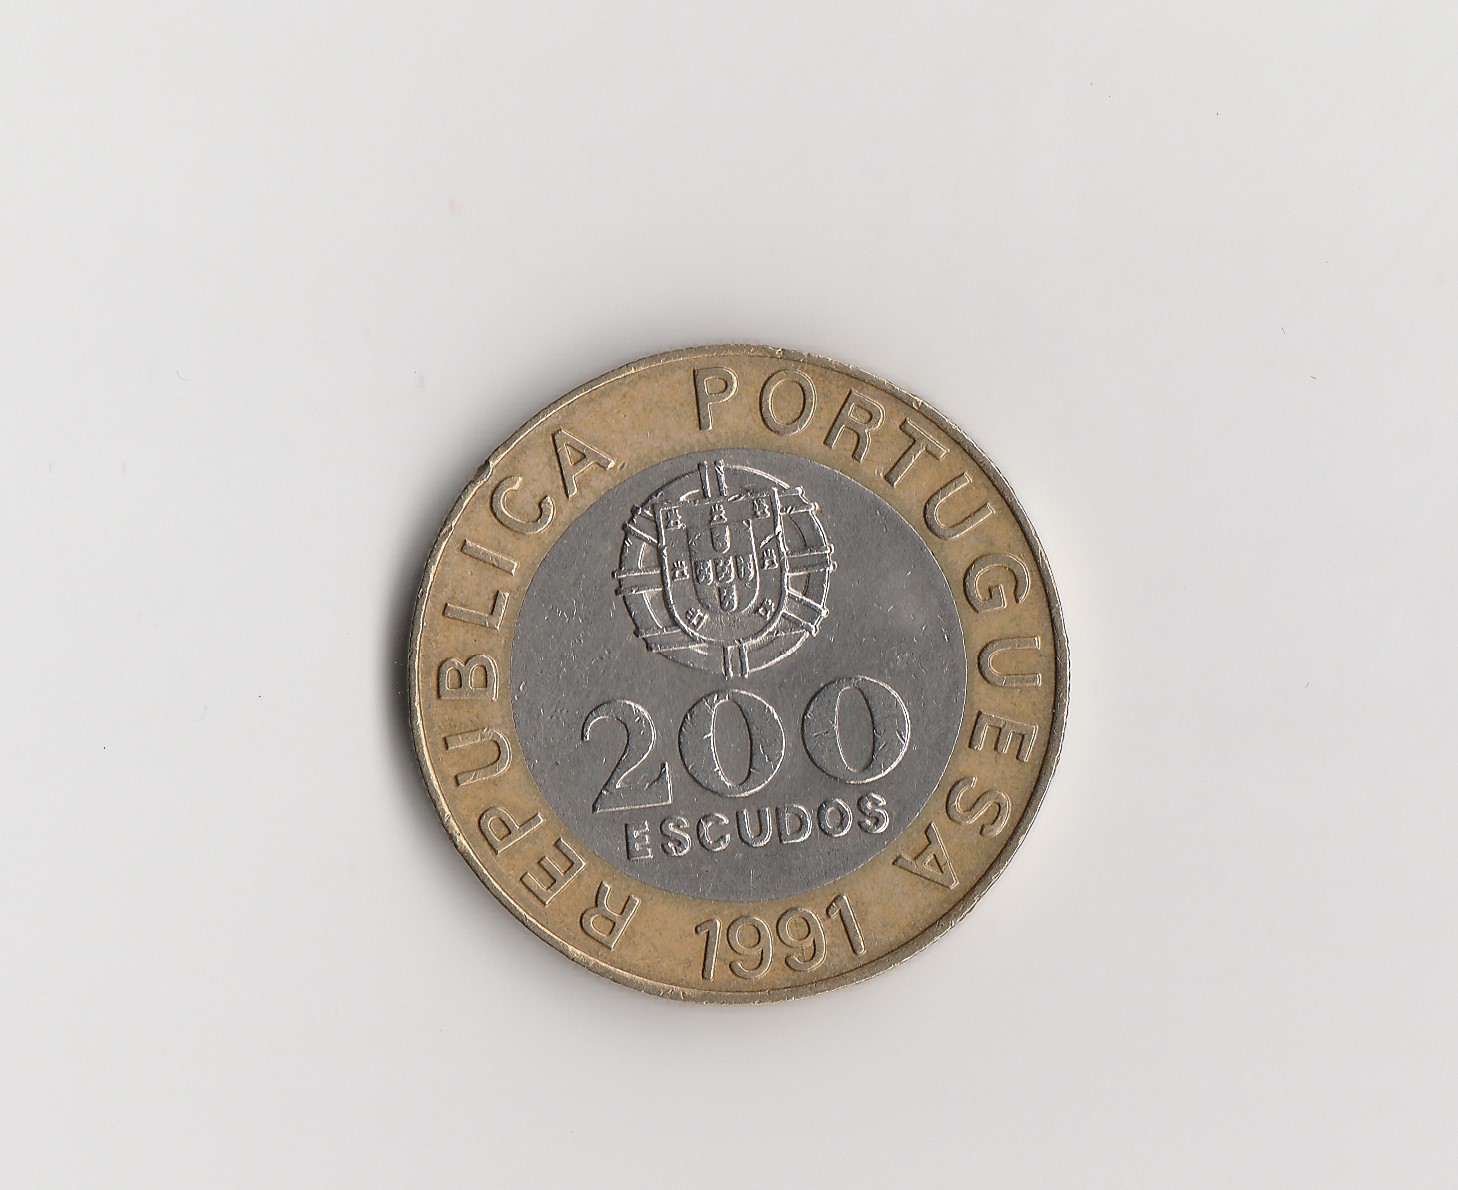  200 Escudos Portugal 1991 carcia de orta   (M066)   